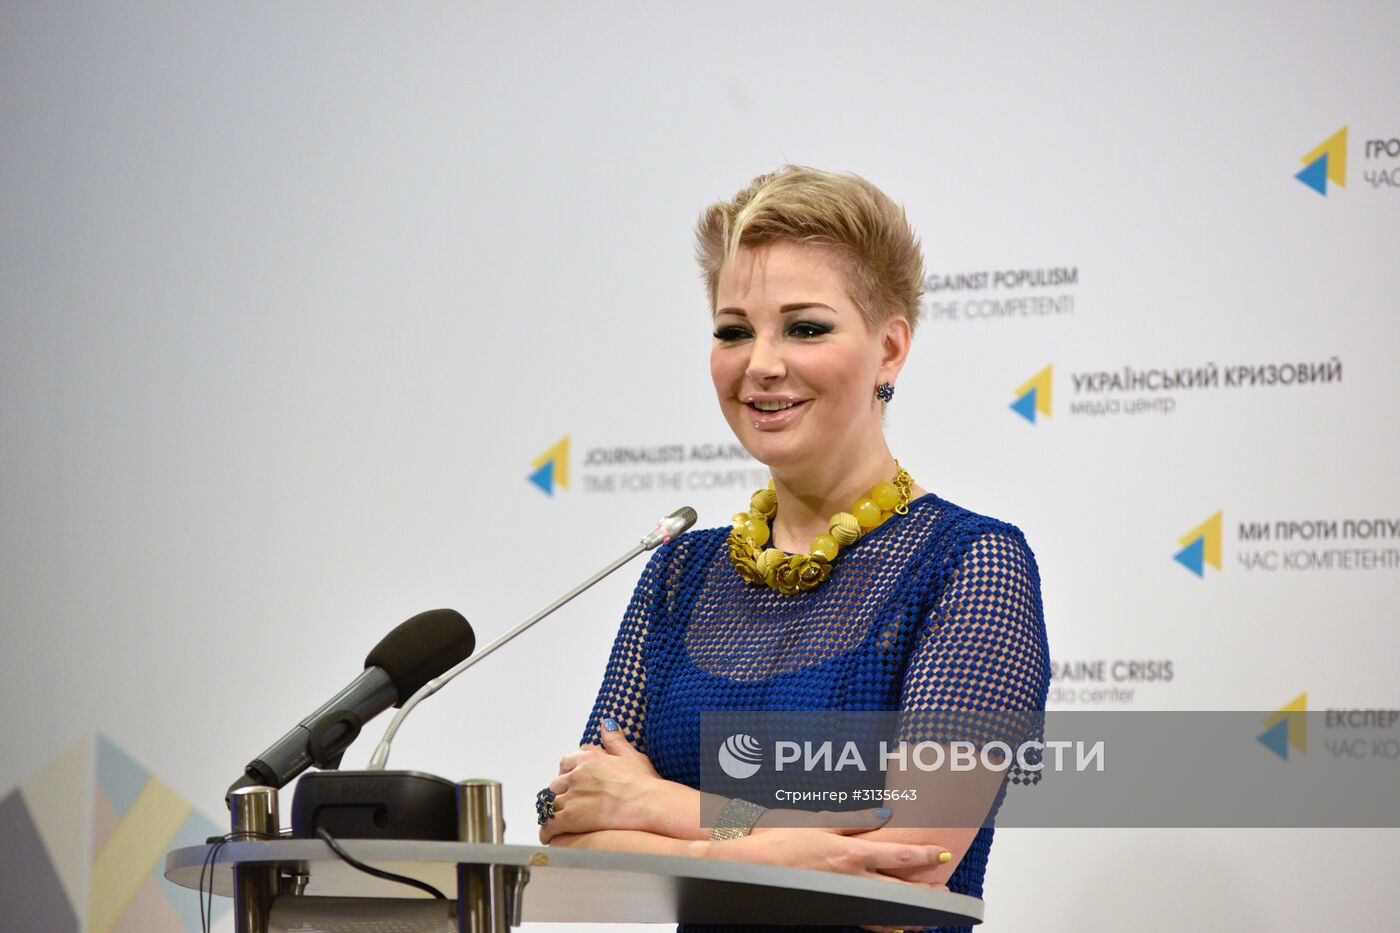 Пресс-конференция М. Максаковой в Киеве